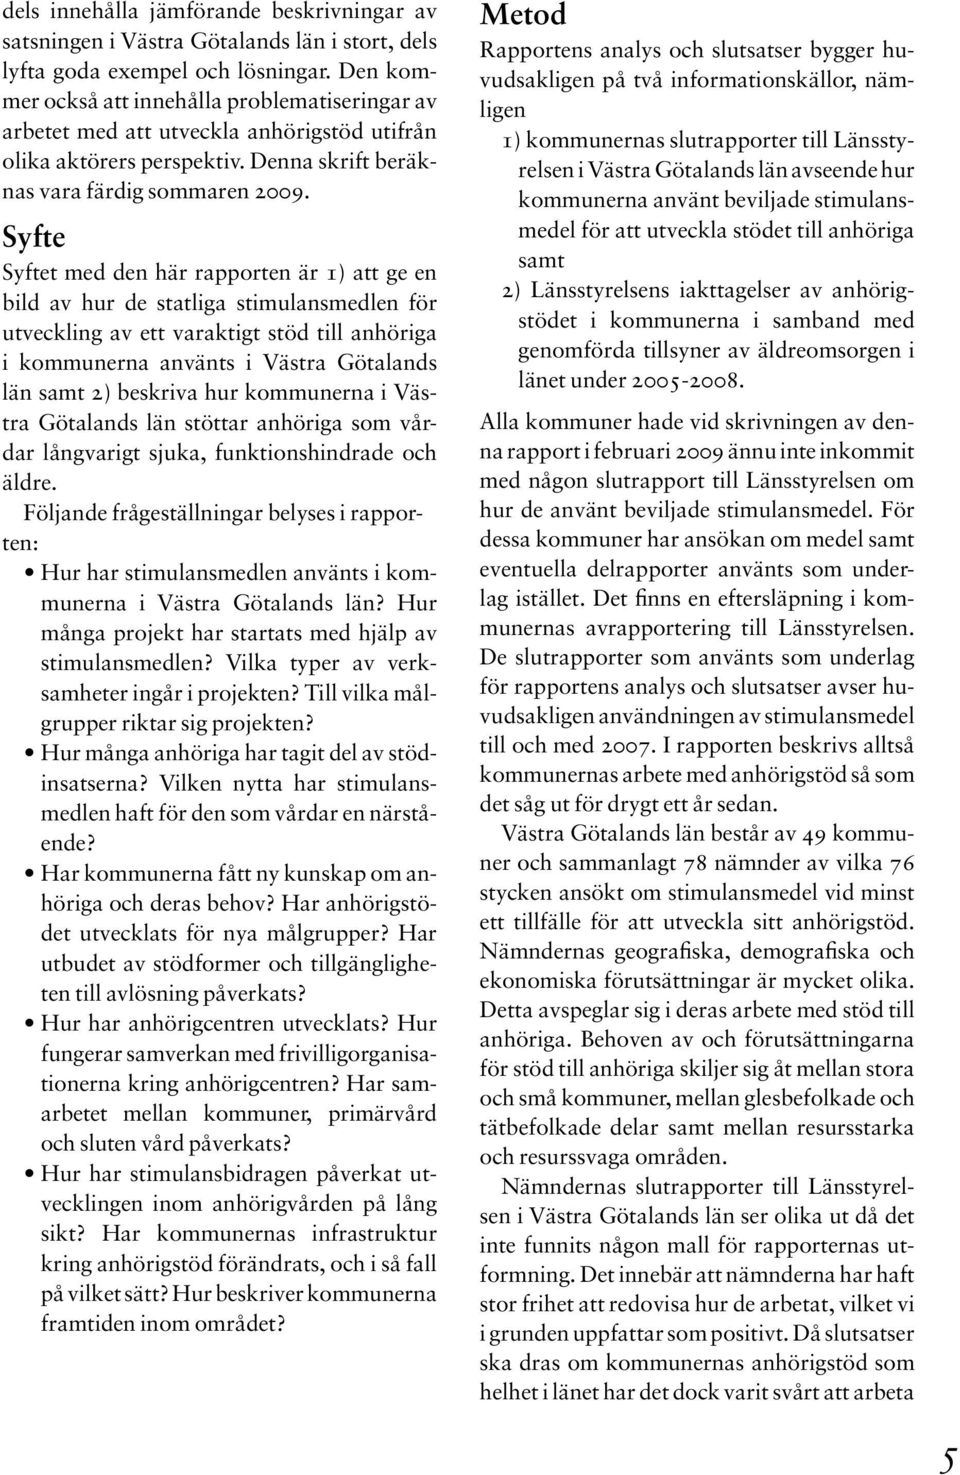 Syfte Syftet med den här rapporten är 1) att ge en bild av hur de statliga stimulansmedlen för utveckling av ett varaktigt stöd till anhöriga i kommunerna använts i Västra Götalands län samt 2)